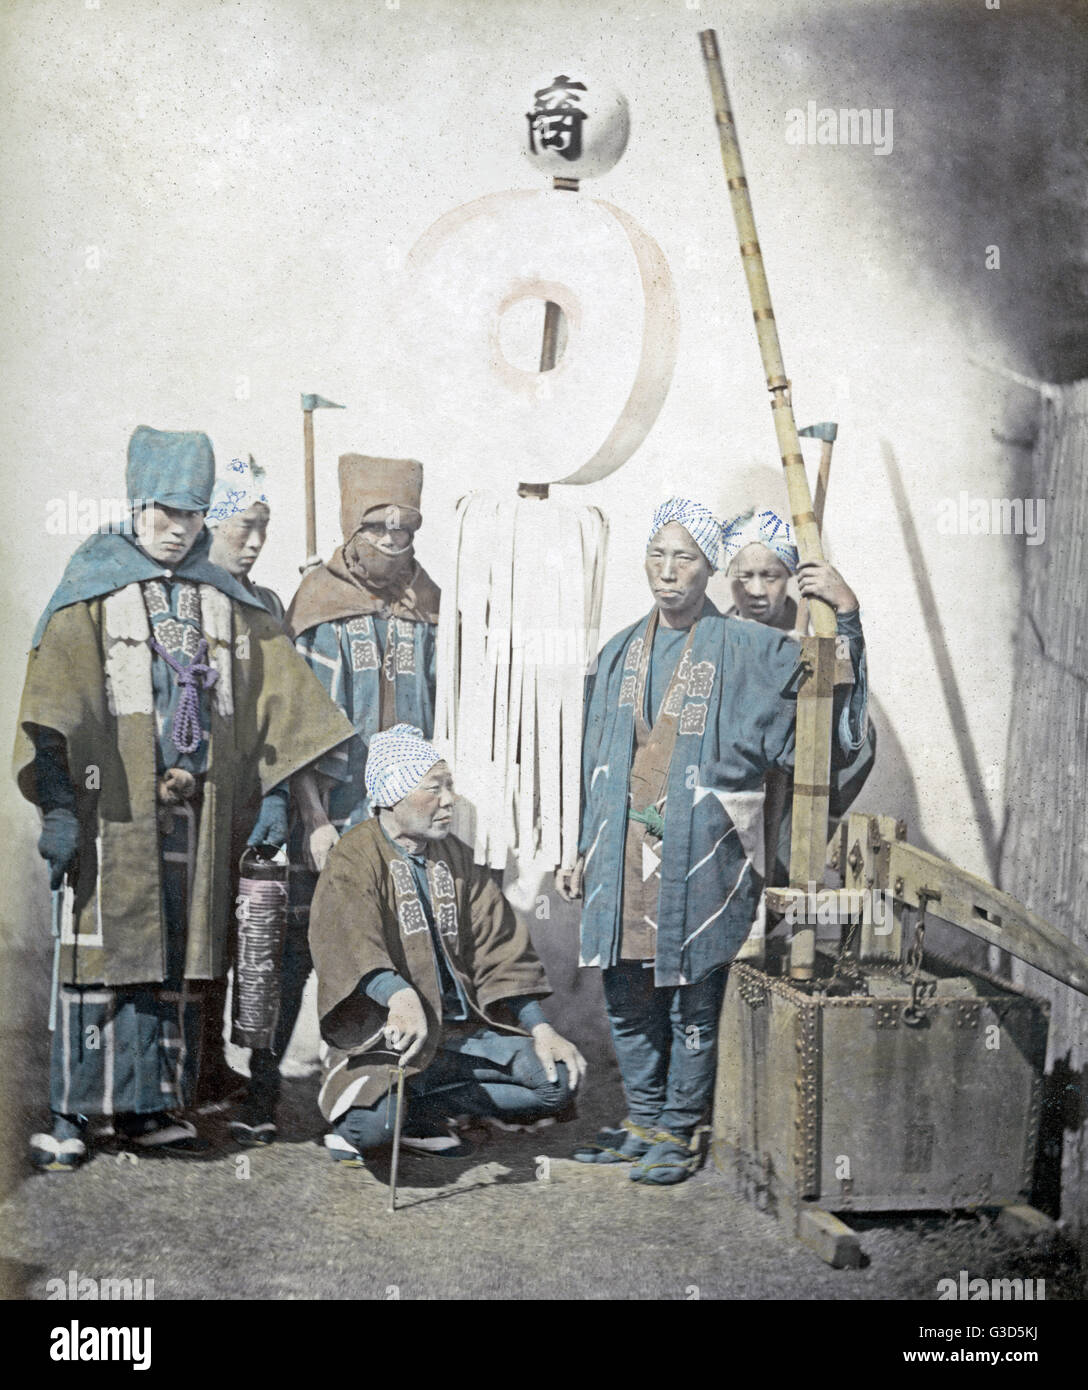 Japanische Feuerwehrmänner, Japan, ca. 1870 Stockfoto